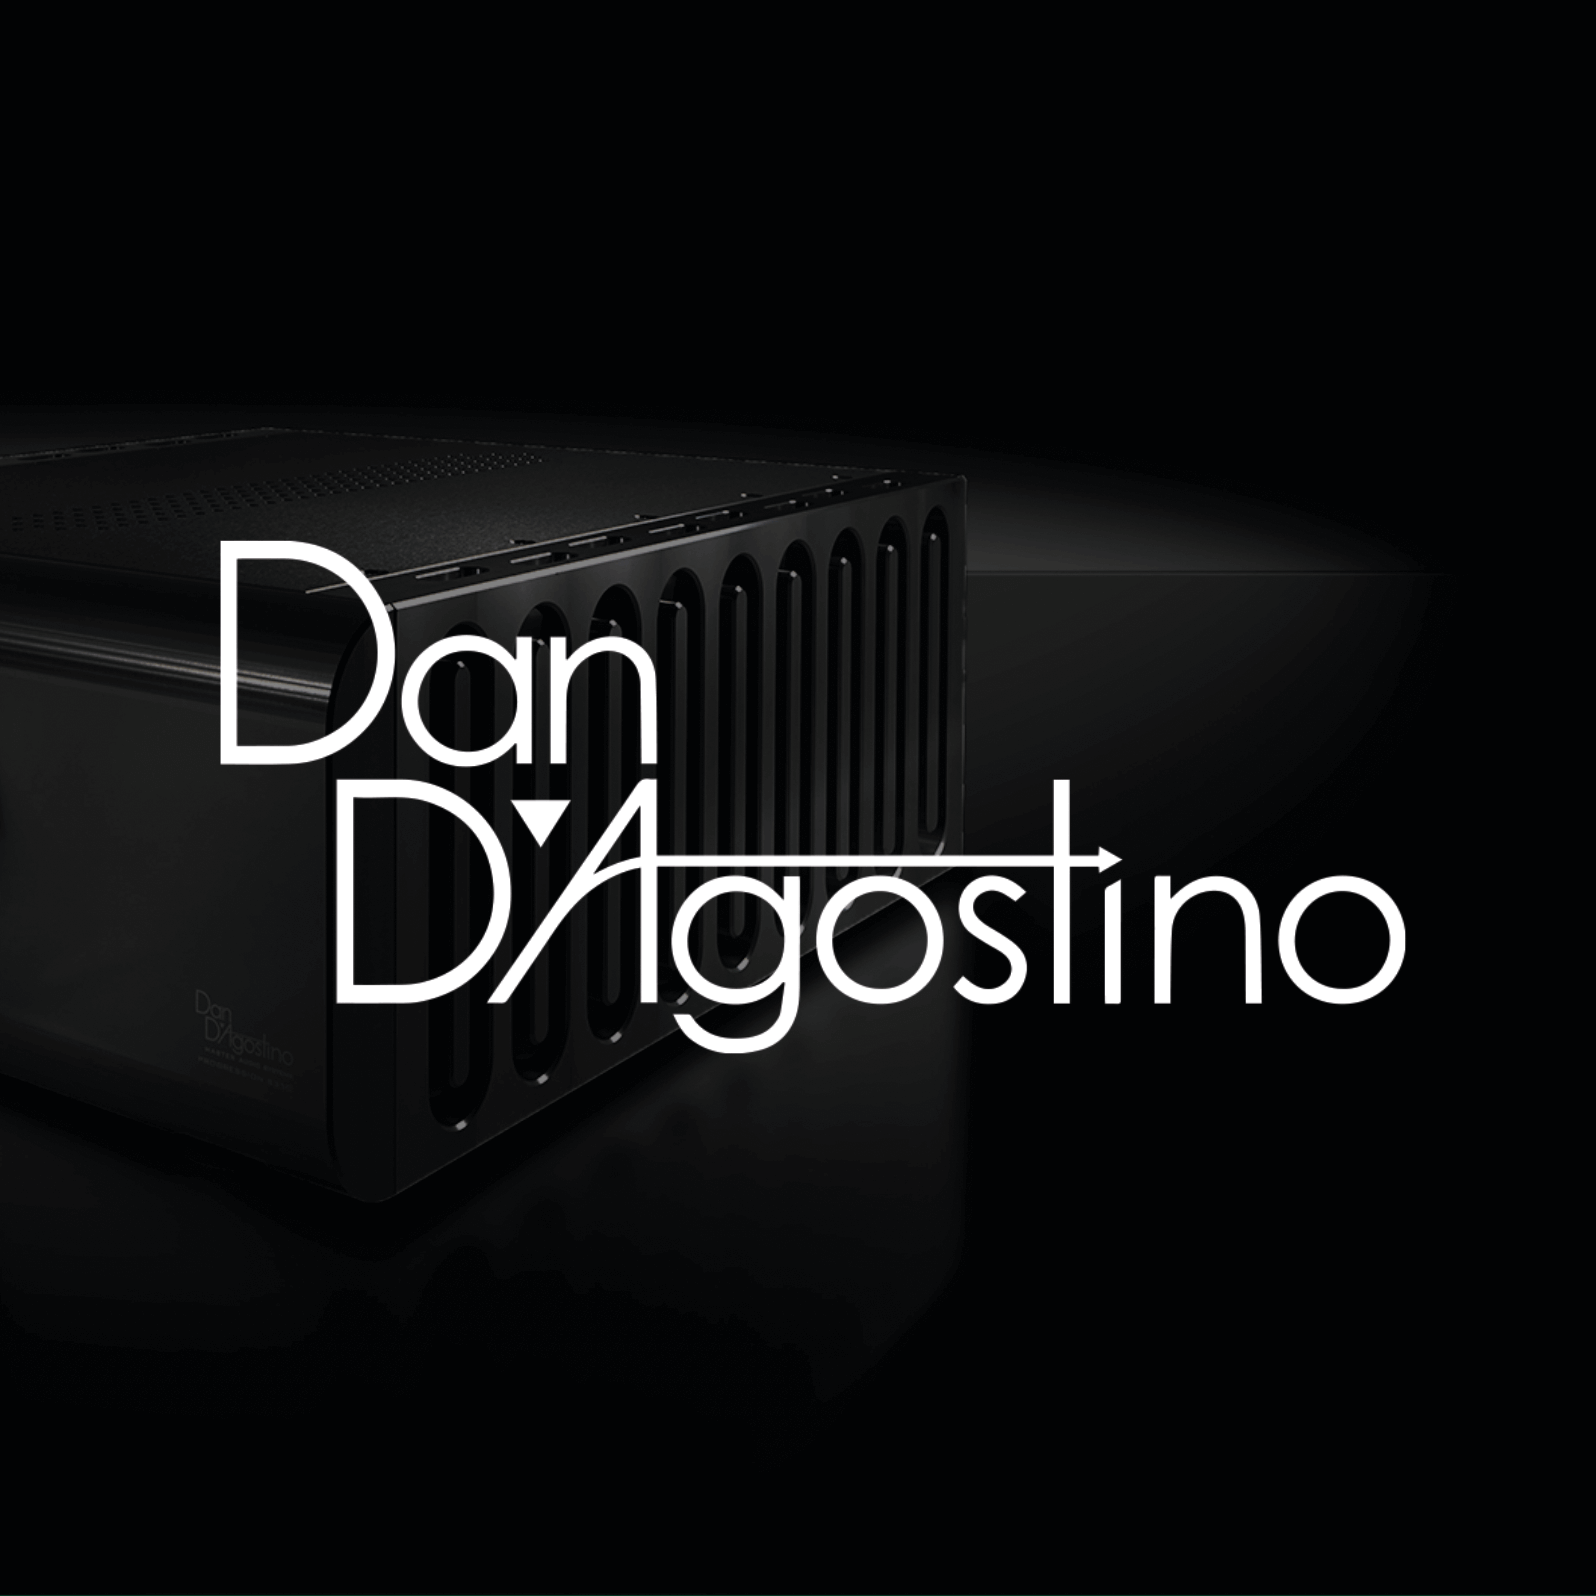 Dan D'Agostino_sml.png